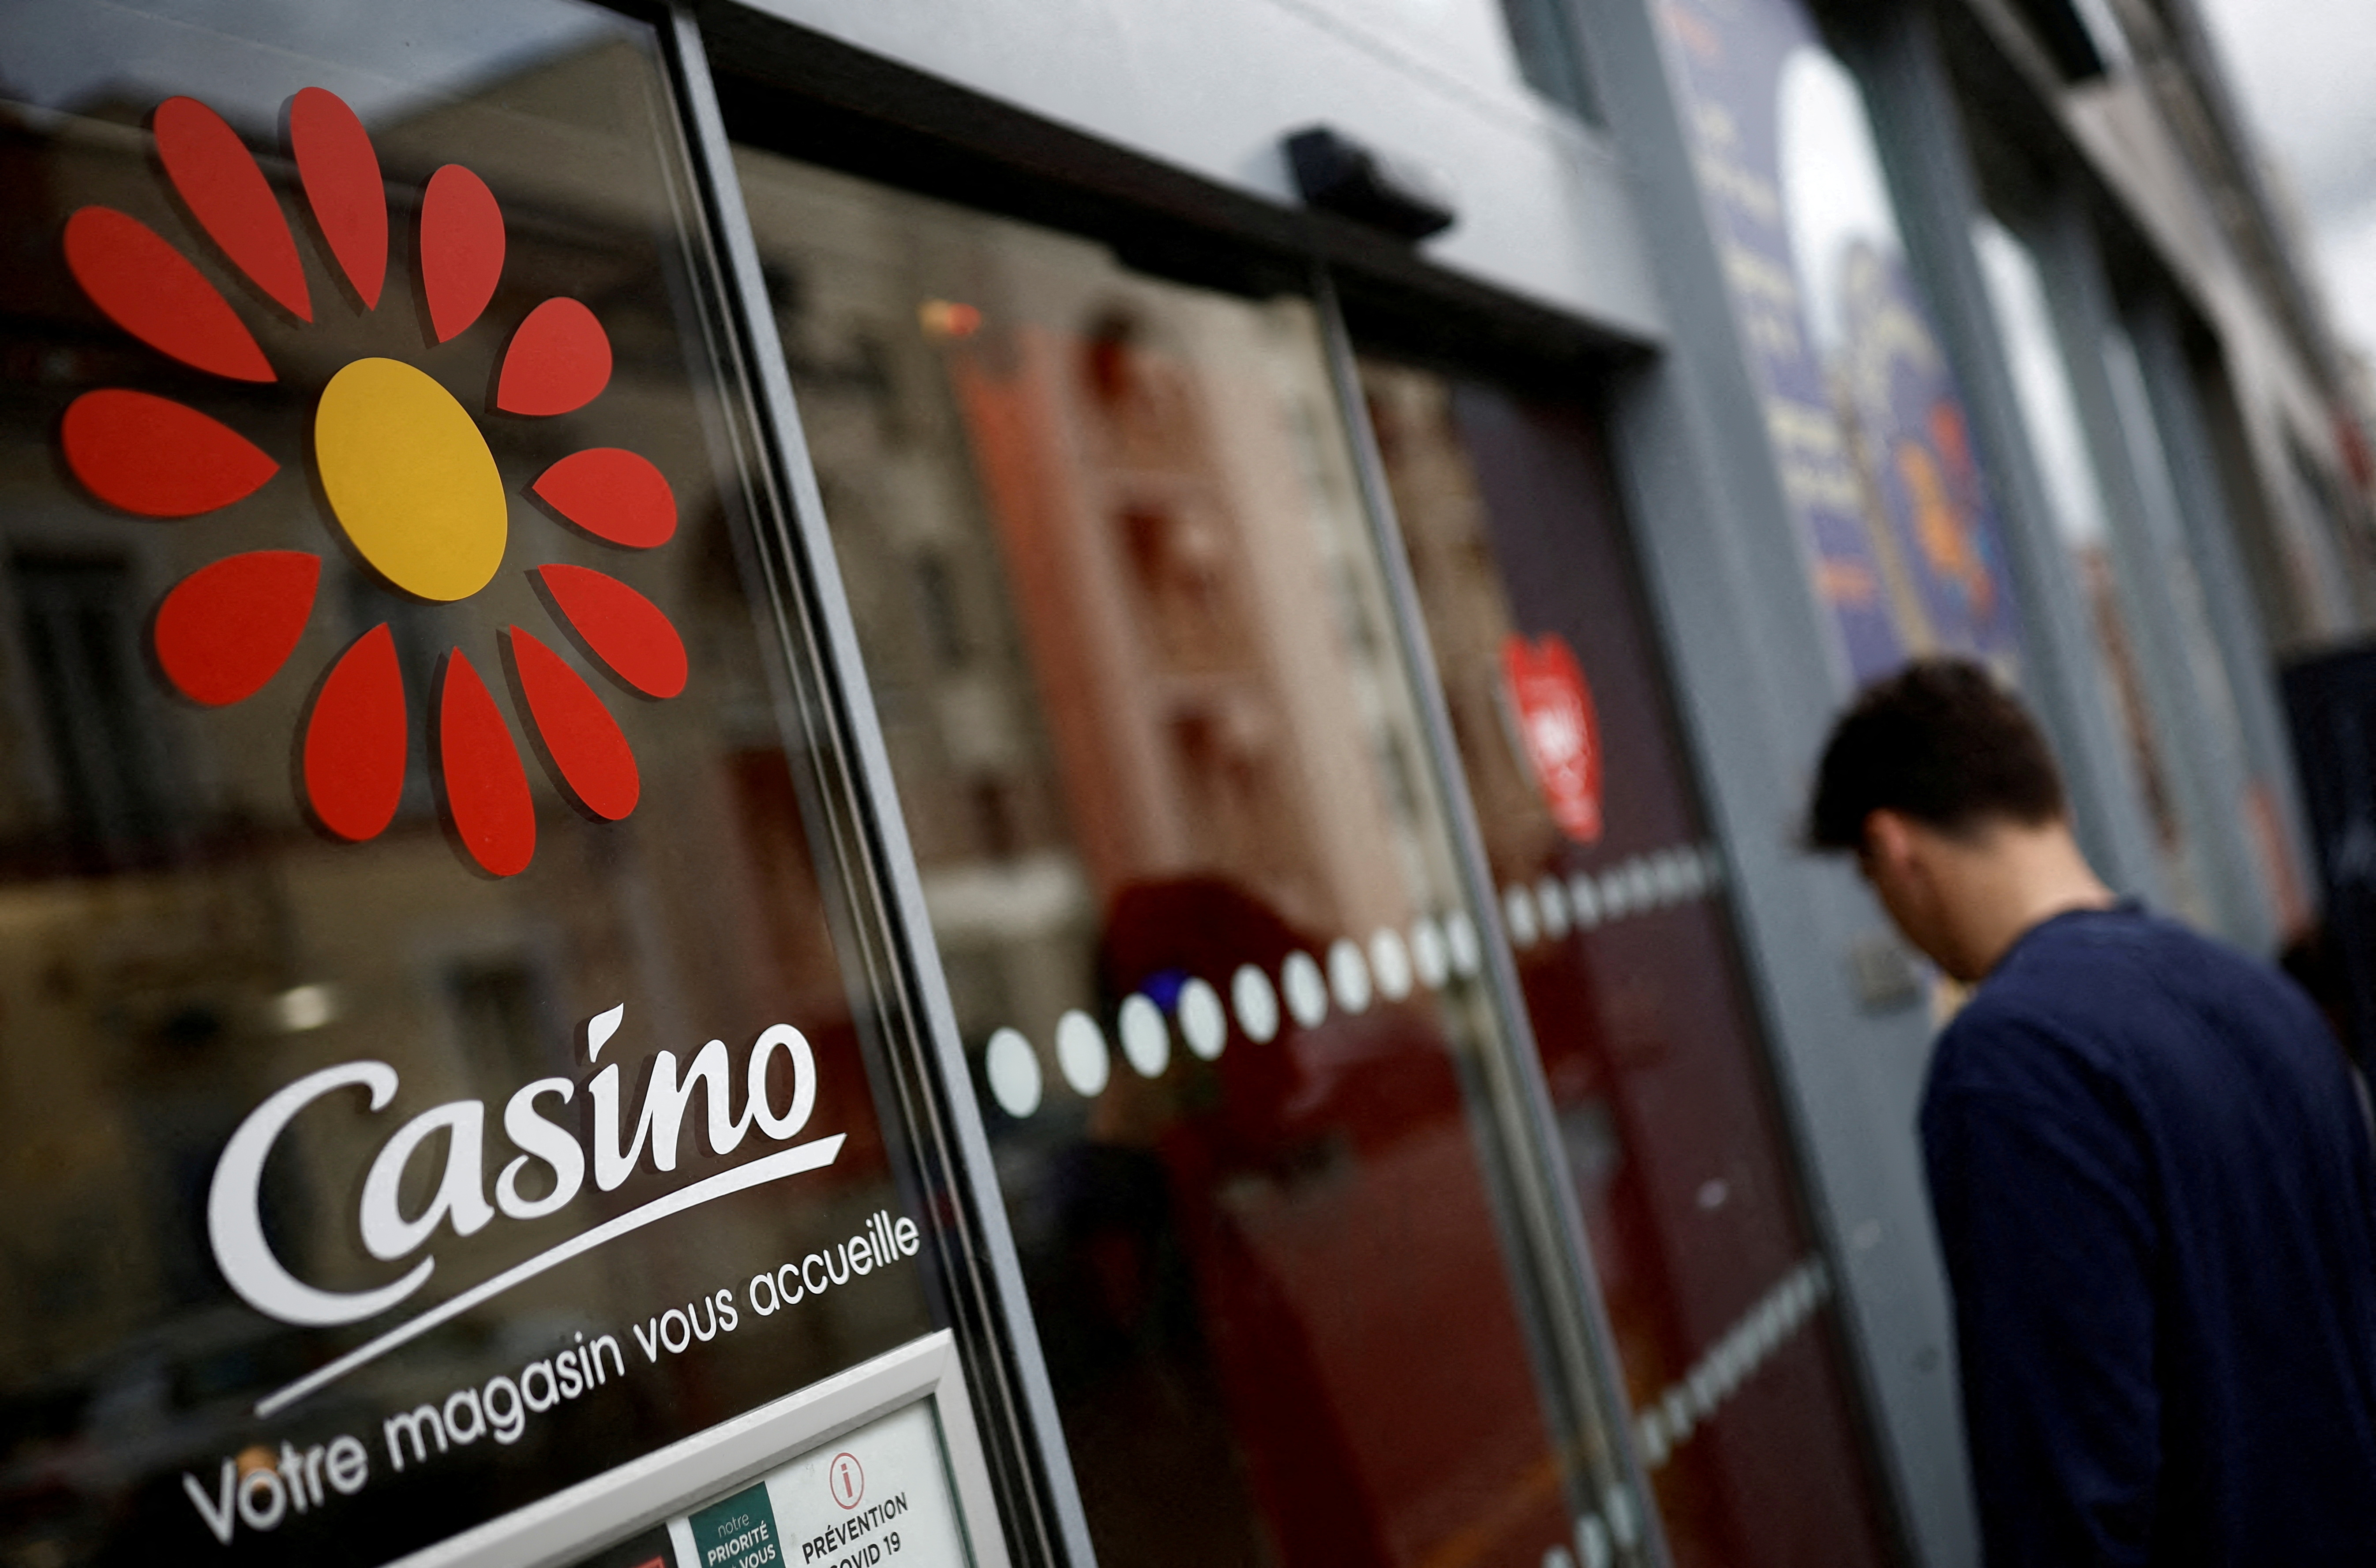 Casino va reporter le paiement de 300 millions d'euros de charges fiscales et sociales